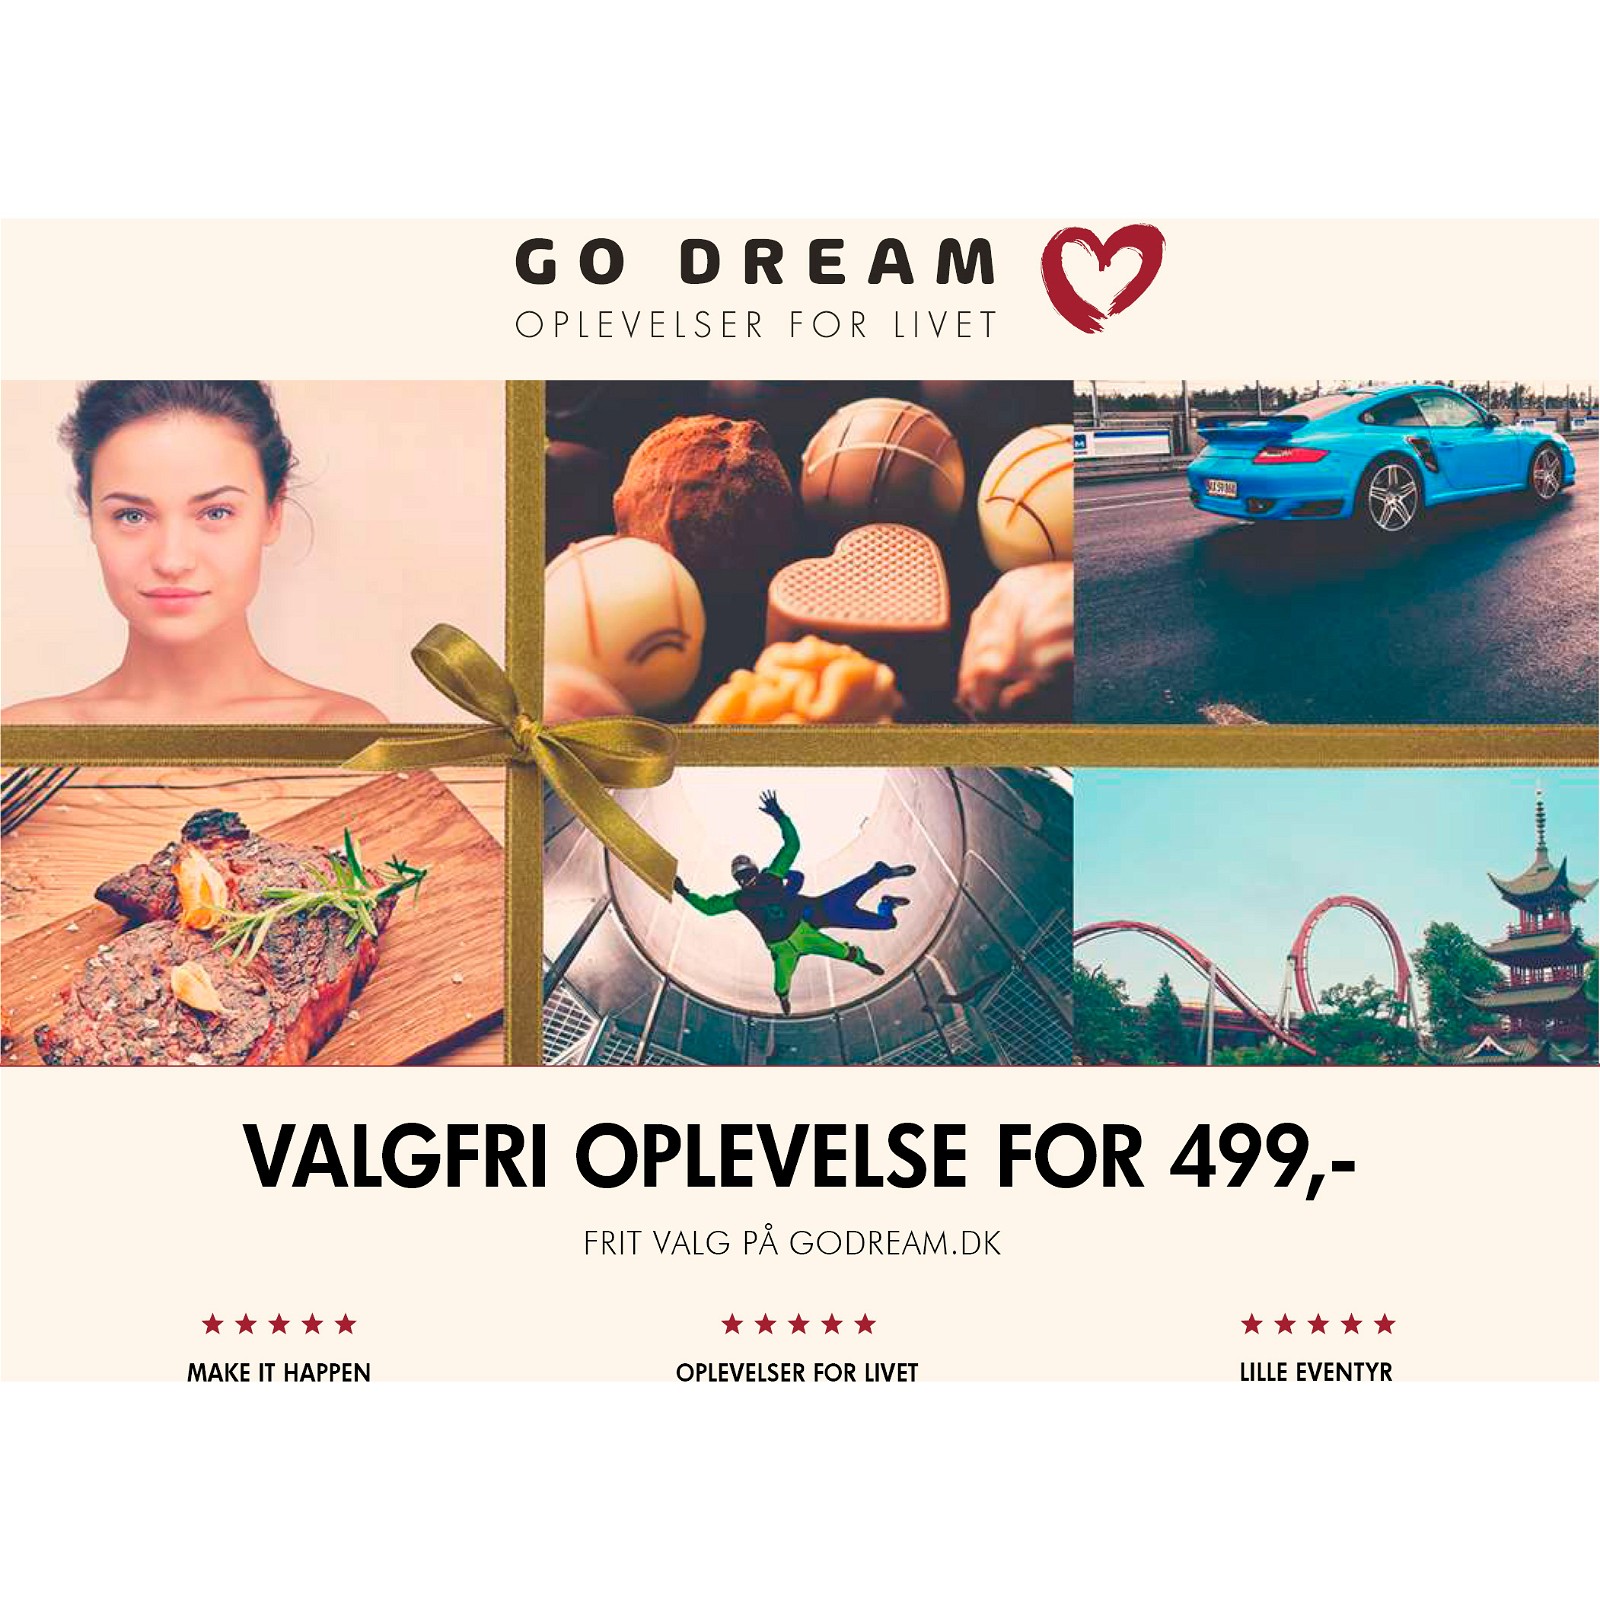 Go Dream Valgfri oplevelse for 499,- gavekort